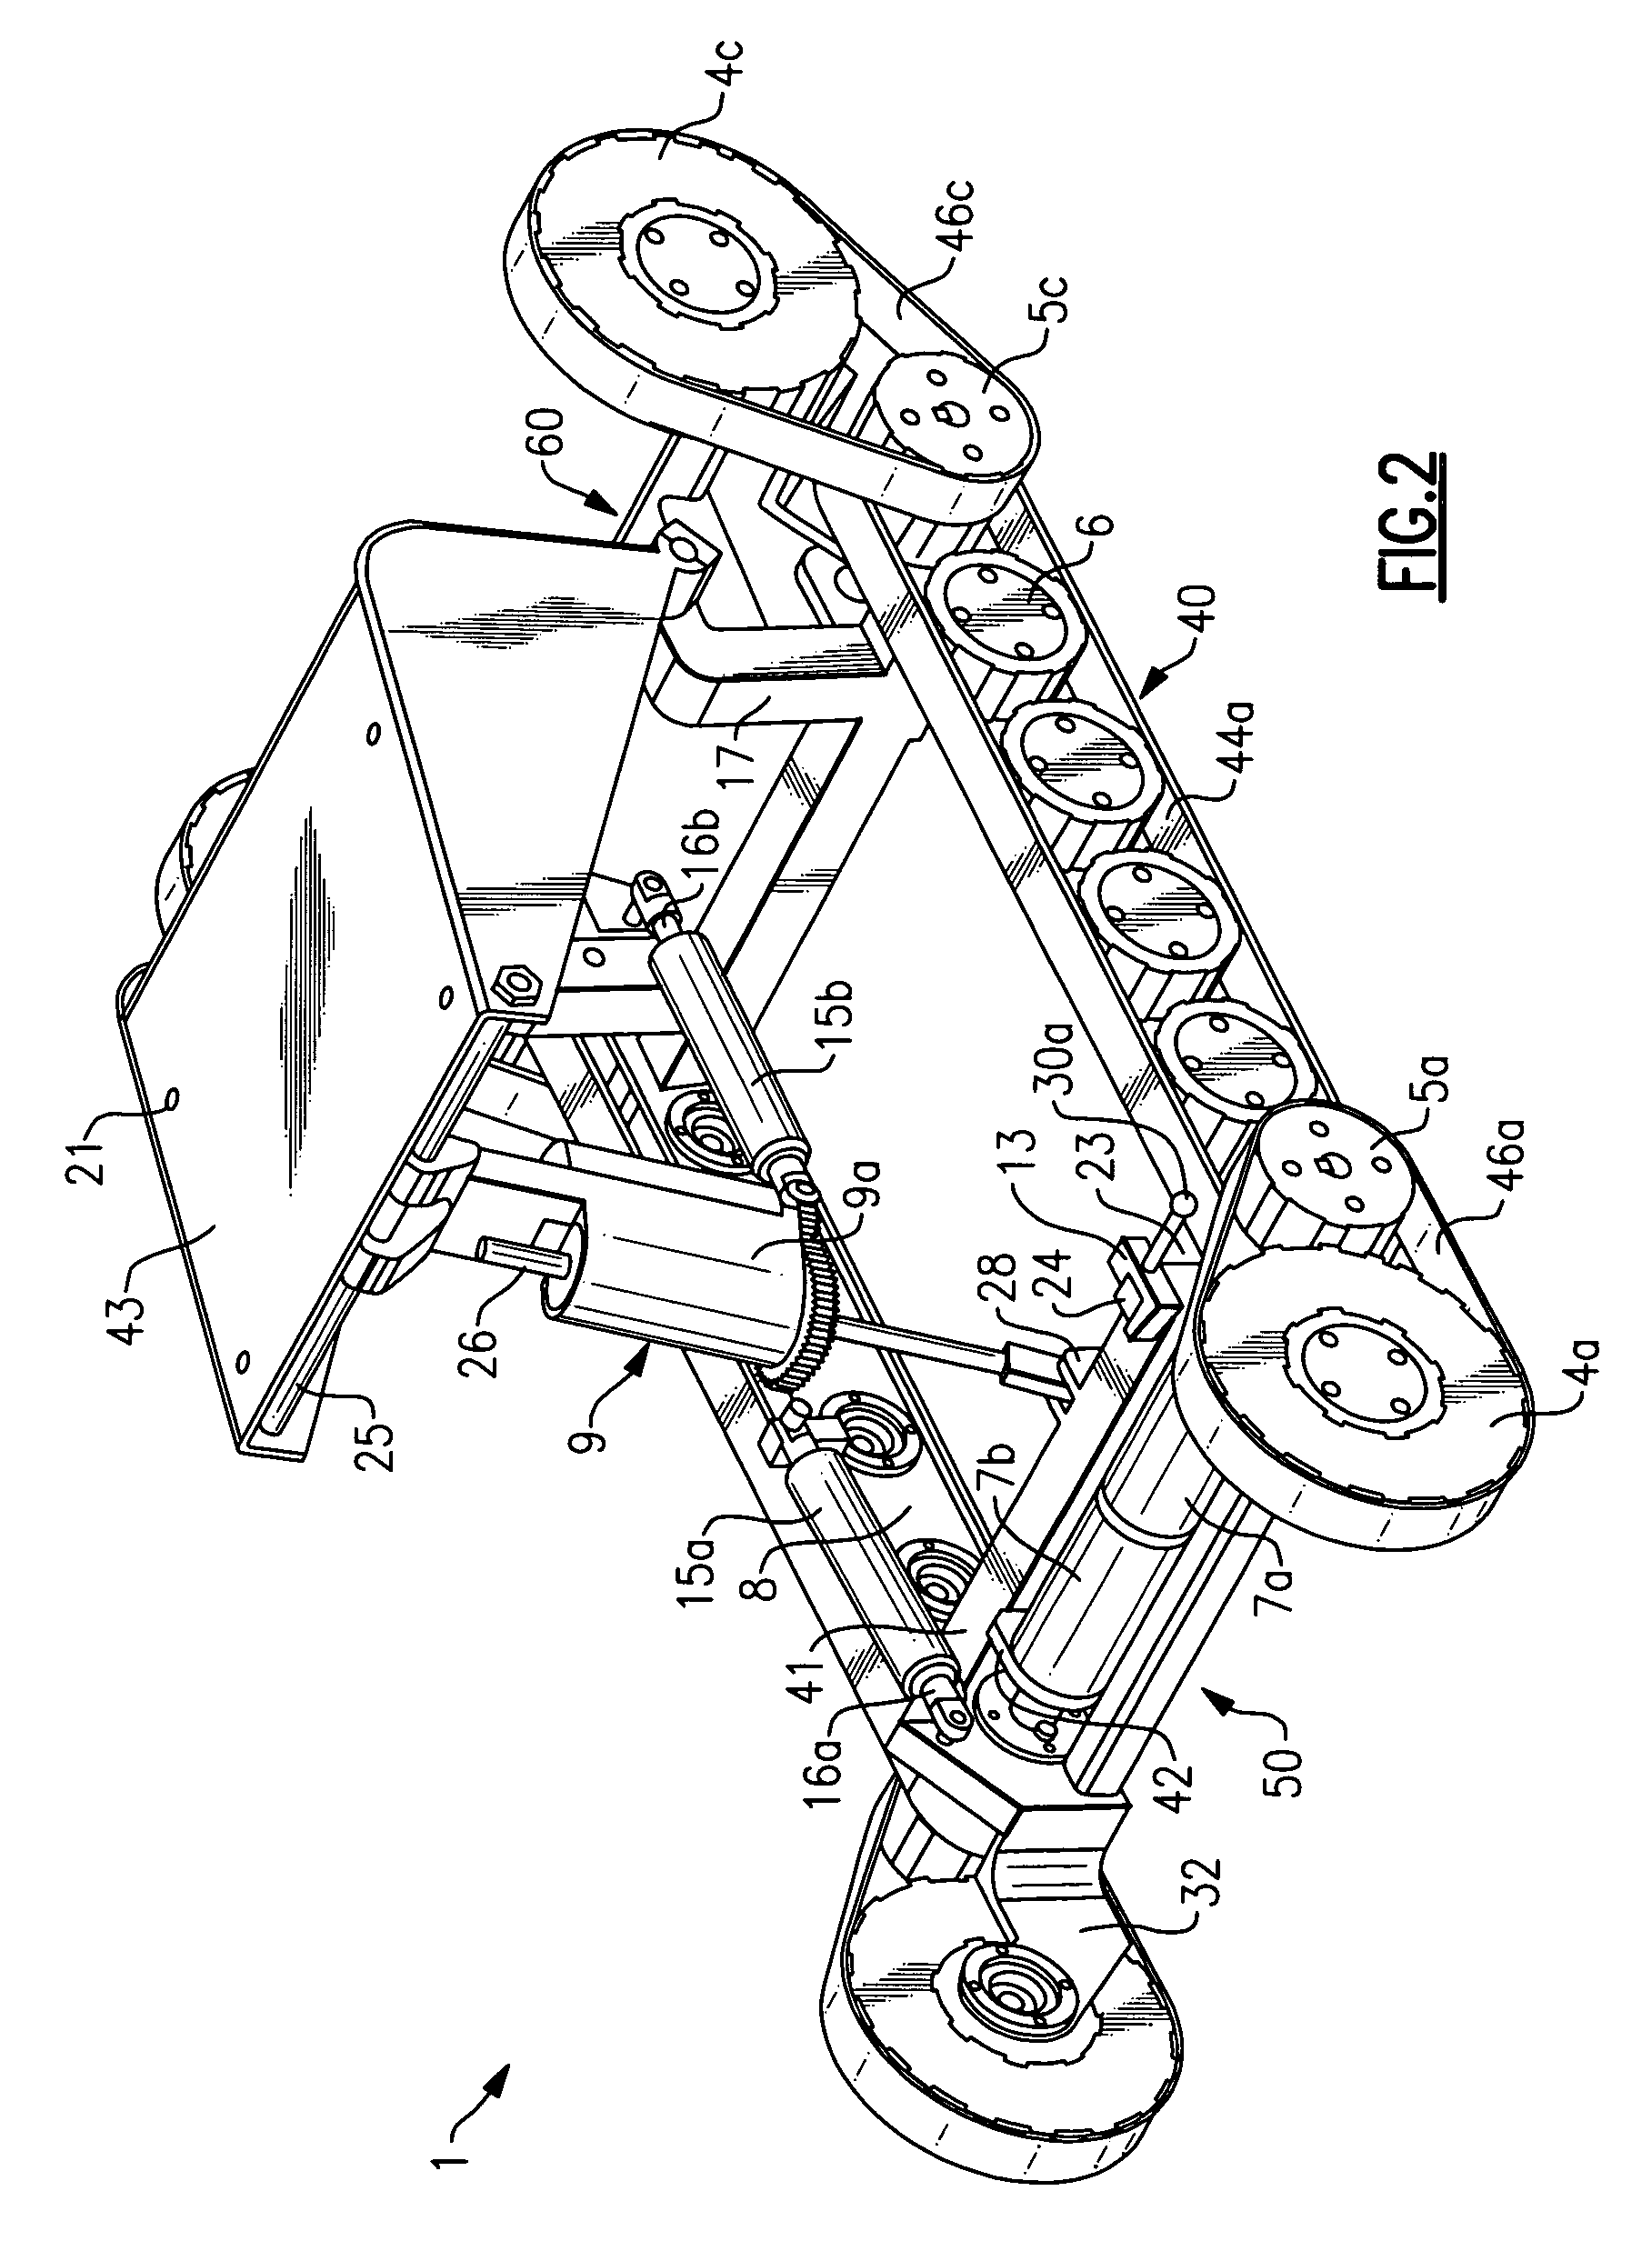 Stair-climbing apparatus